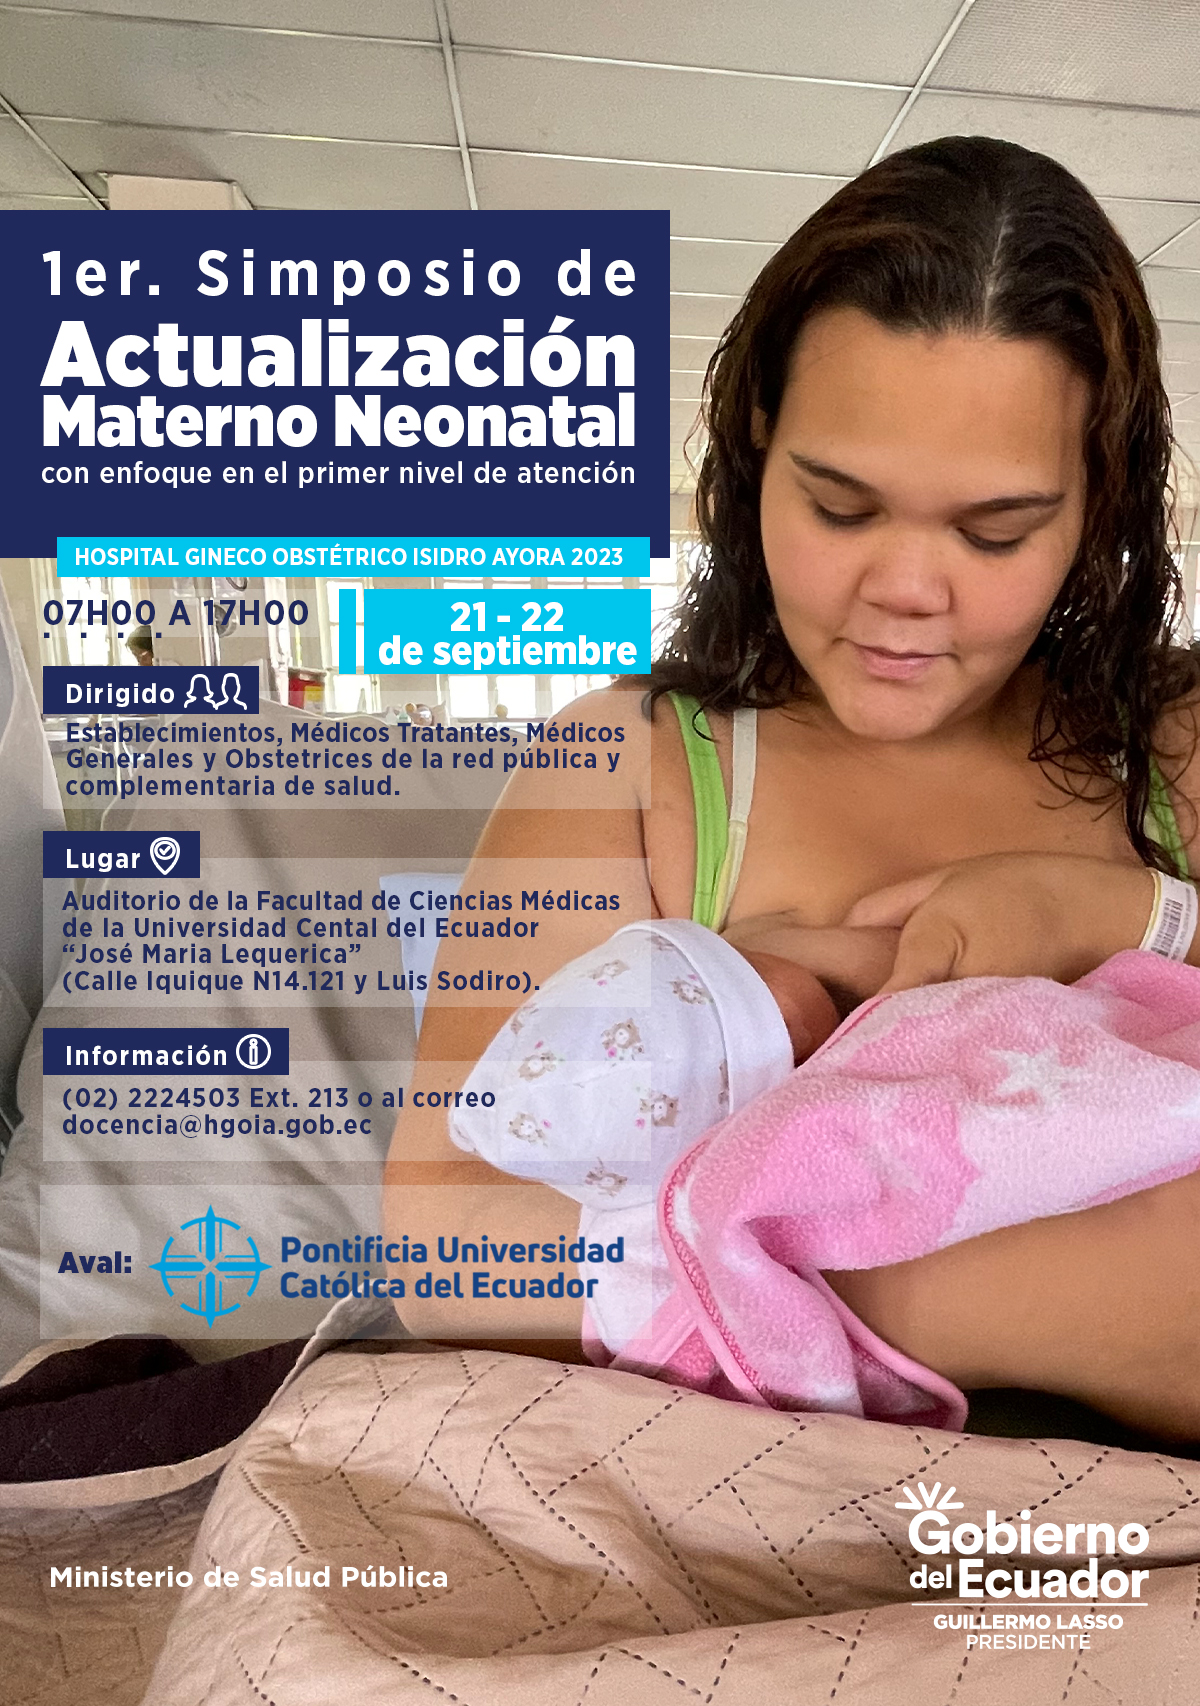 Participantes aprobados en el Simposio de Actualización Materno Neonatal con enfoque en el Primer Nivel de Atención